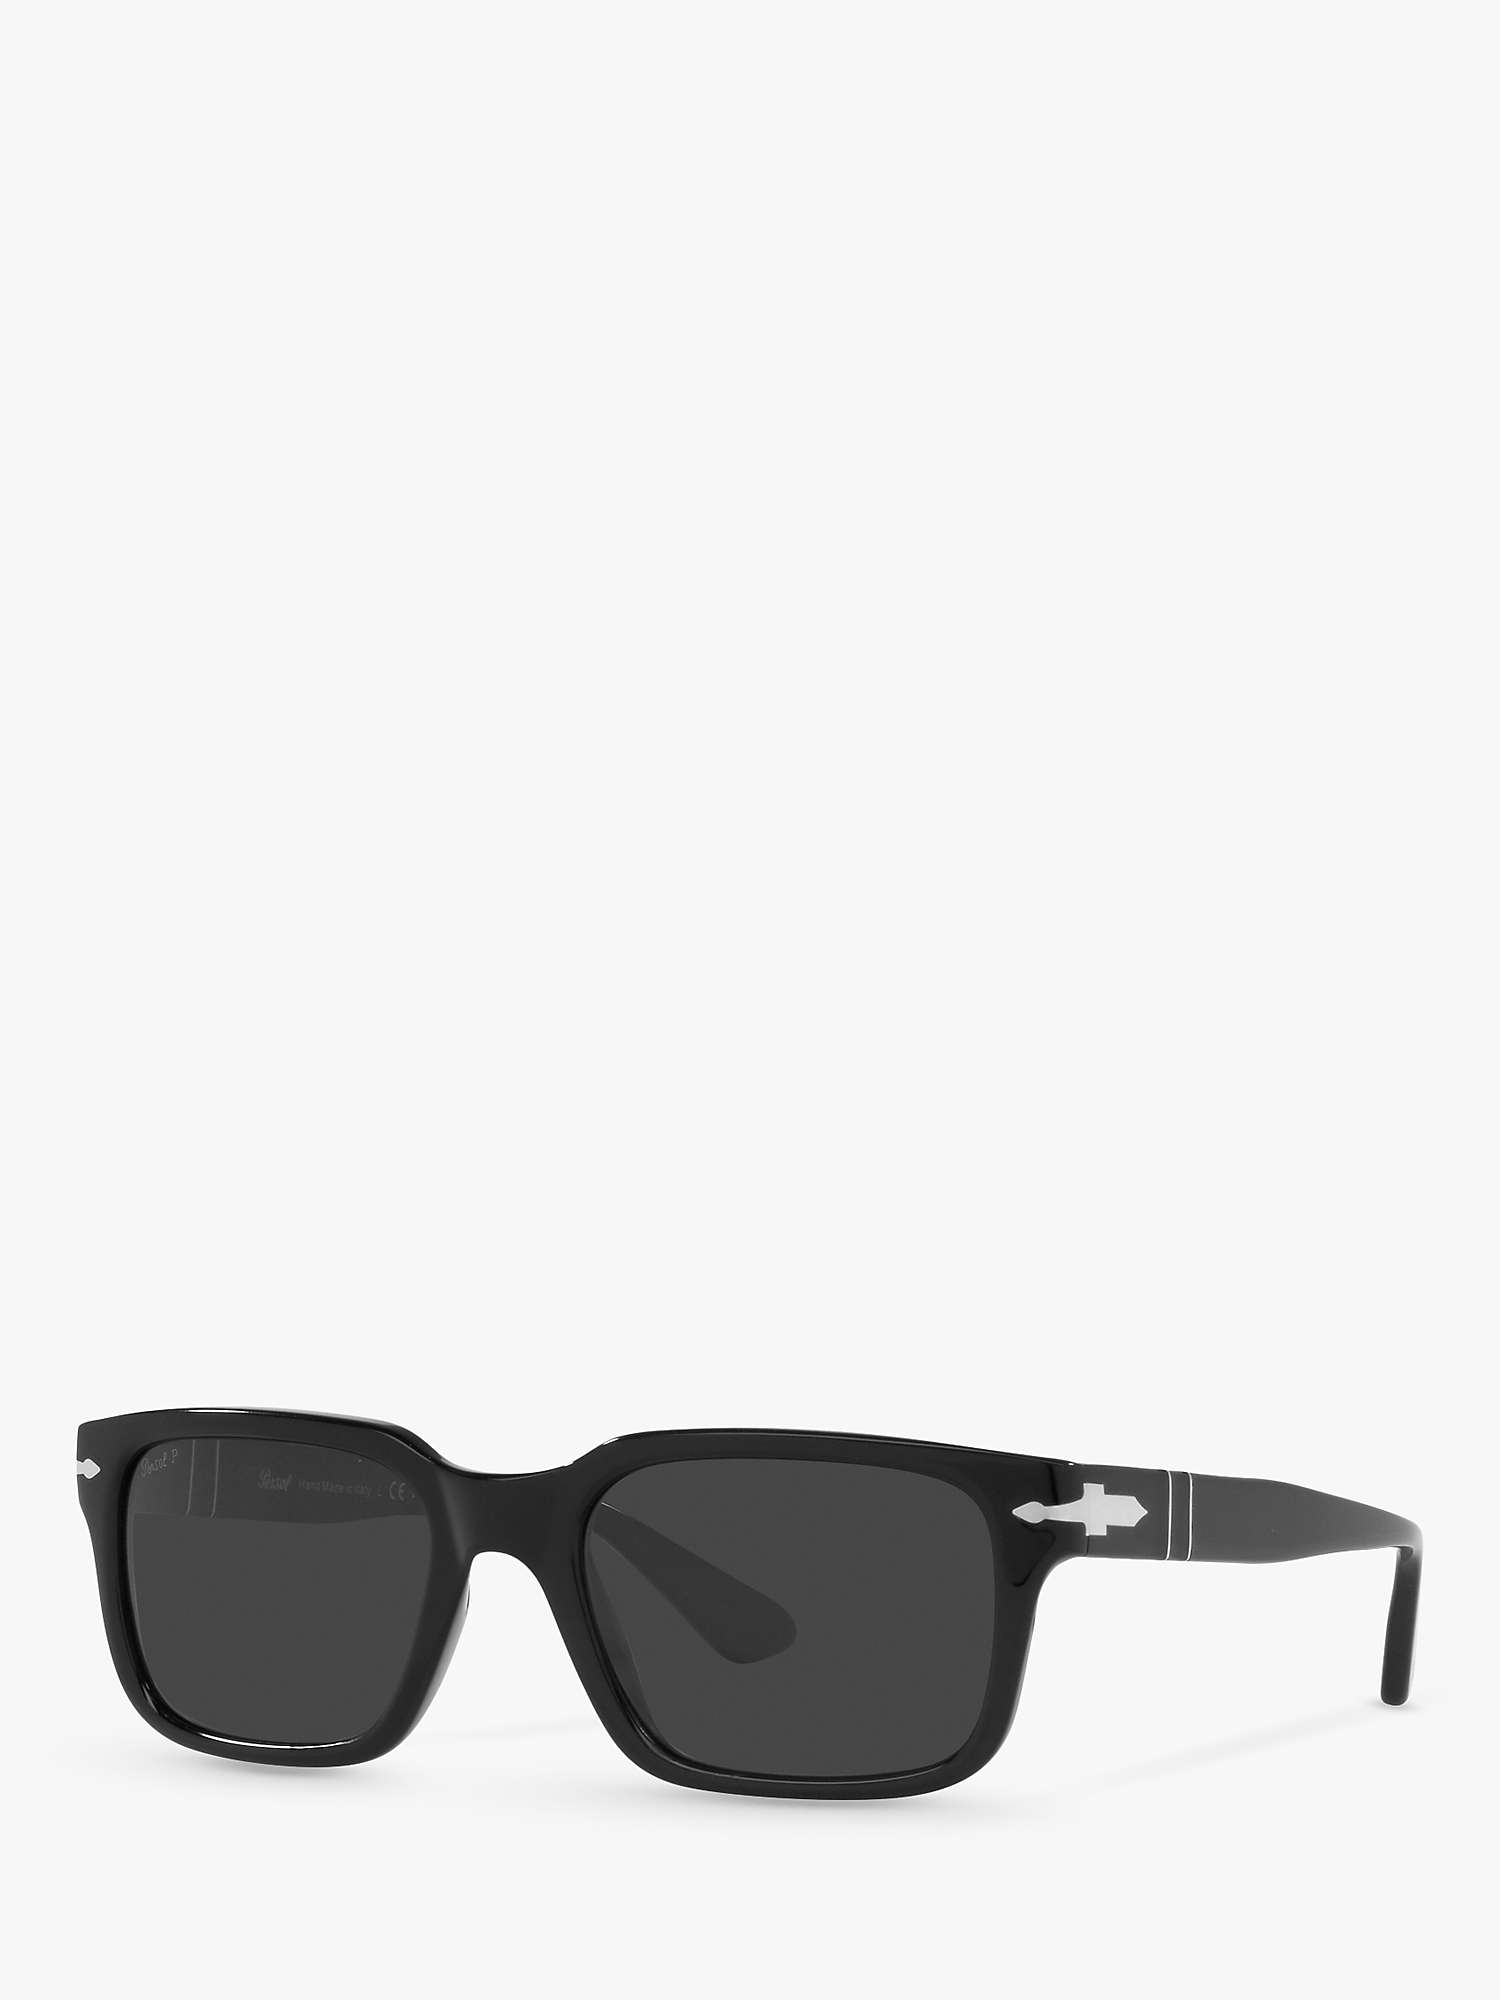 Buy Persol PO3272S Men's Polarised Rectangular Sunglasses, Black/Grey Online at johnlewis.com